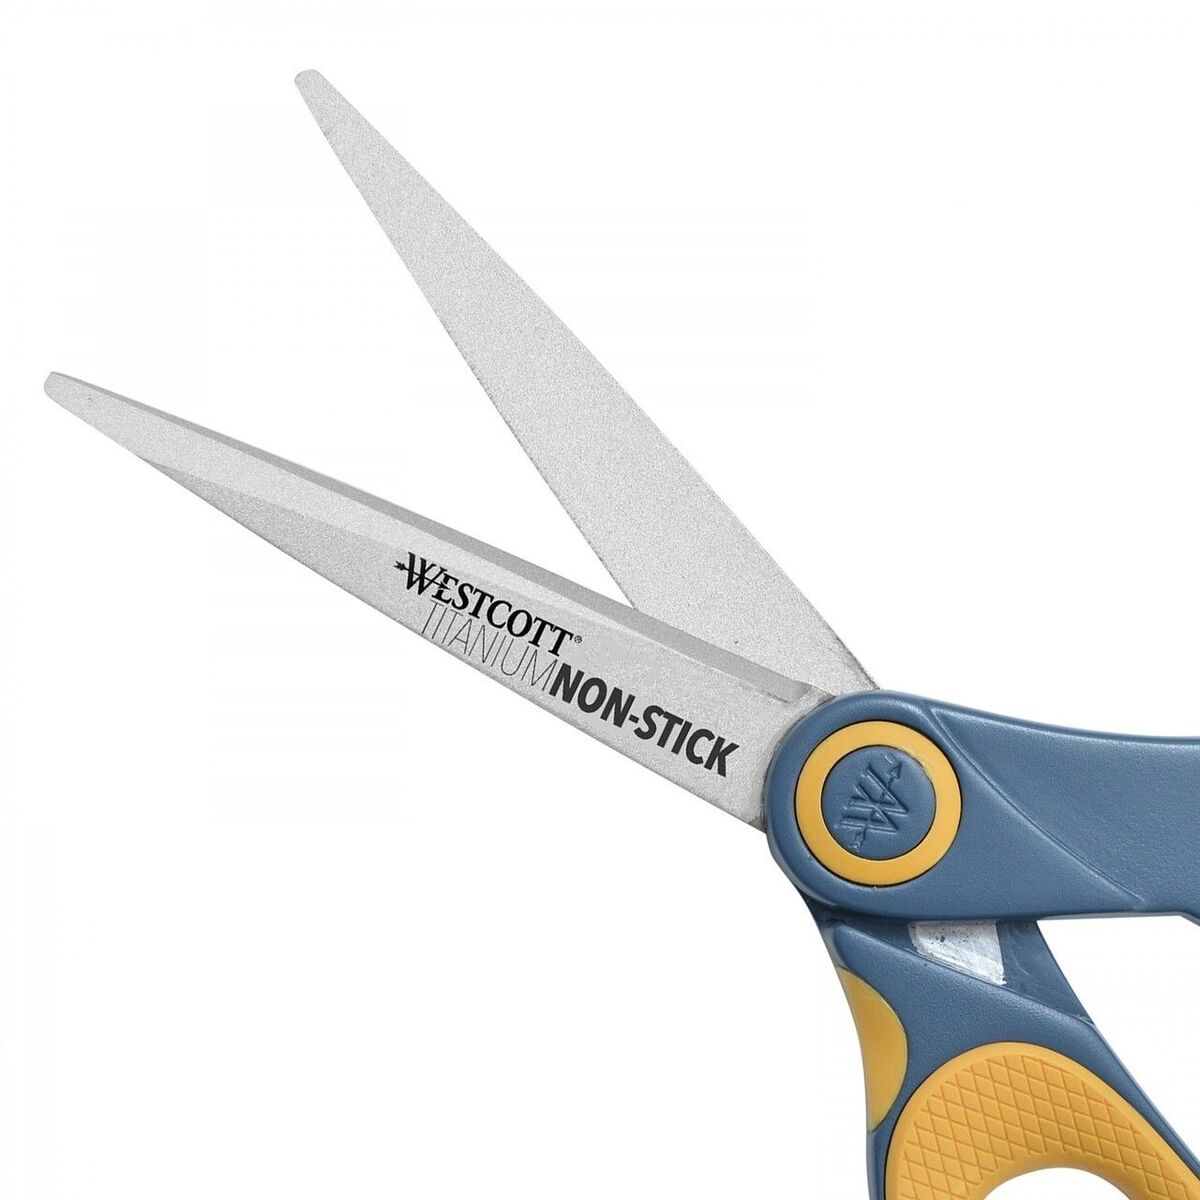 Westcott Titanium Bonded Scissors